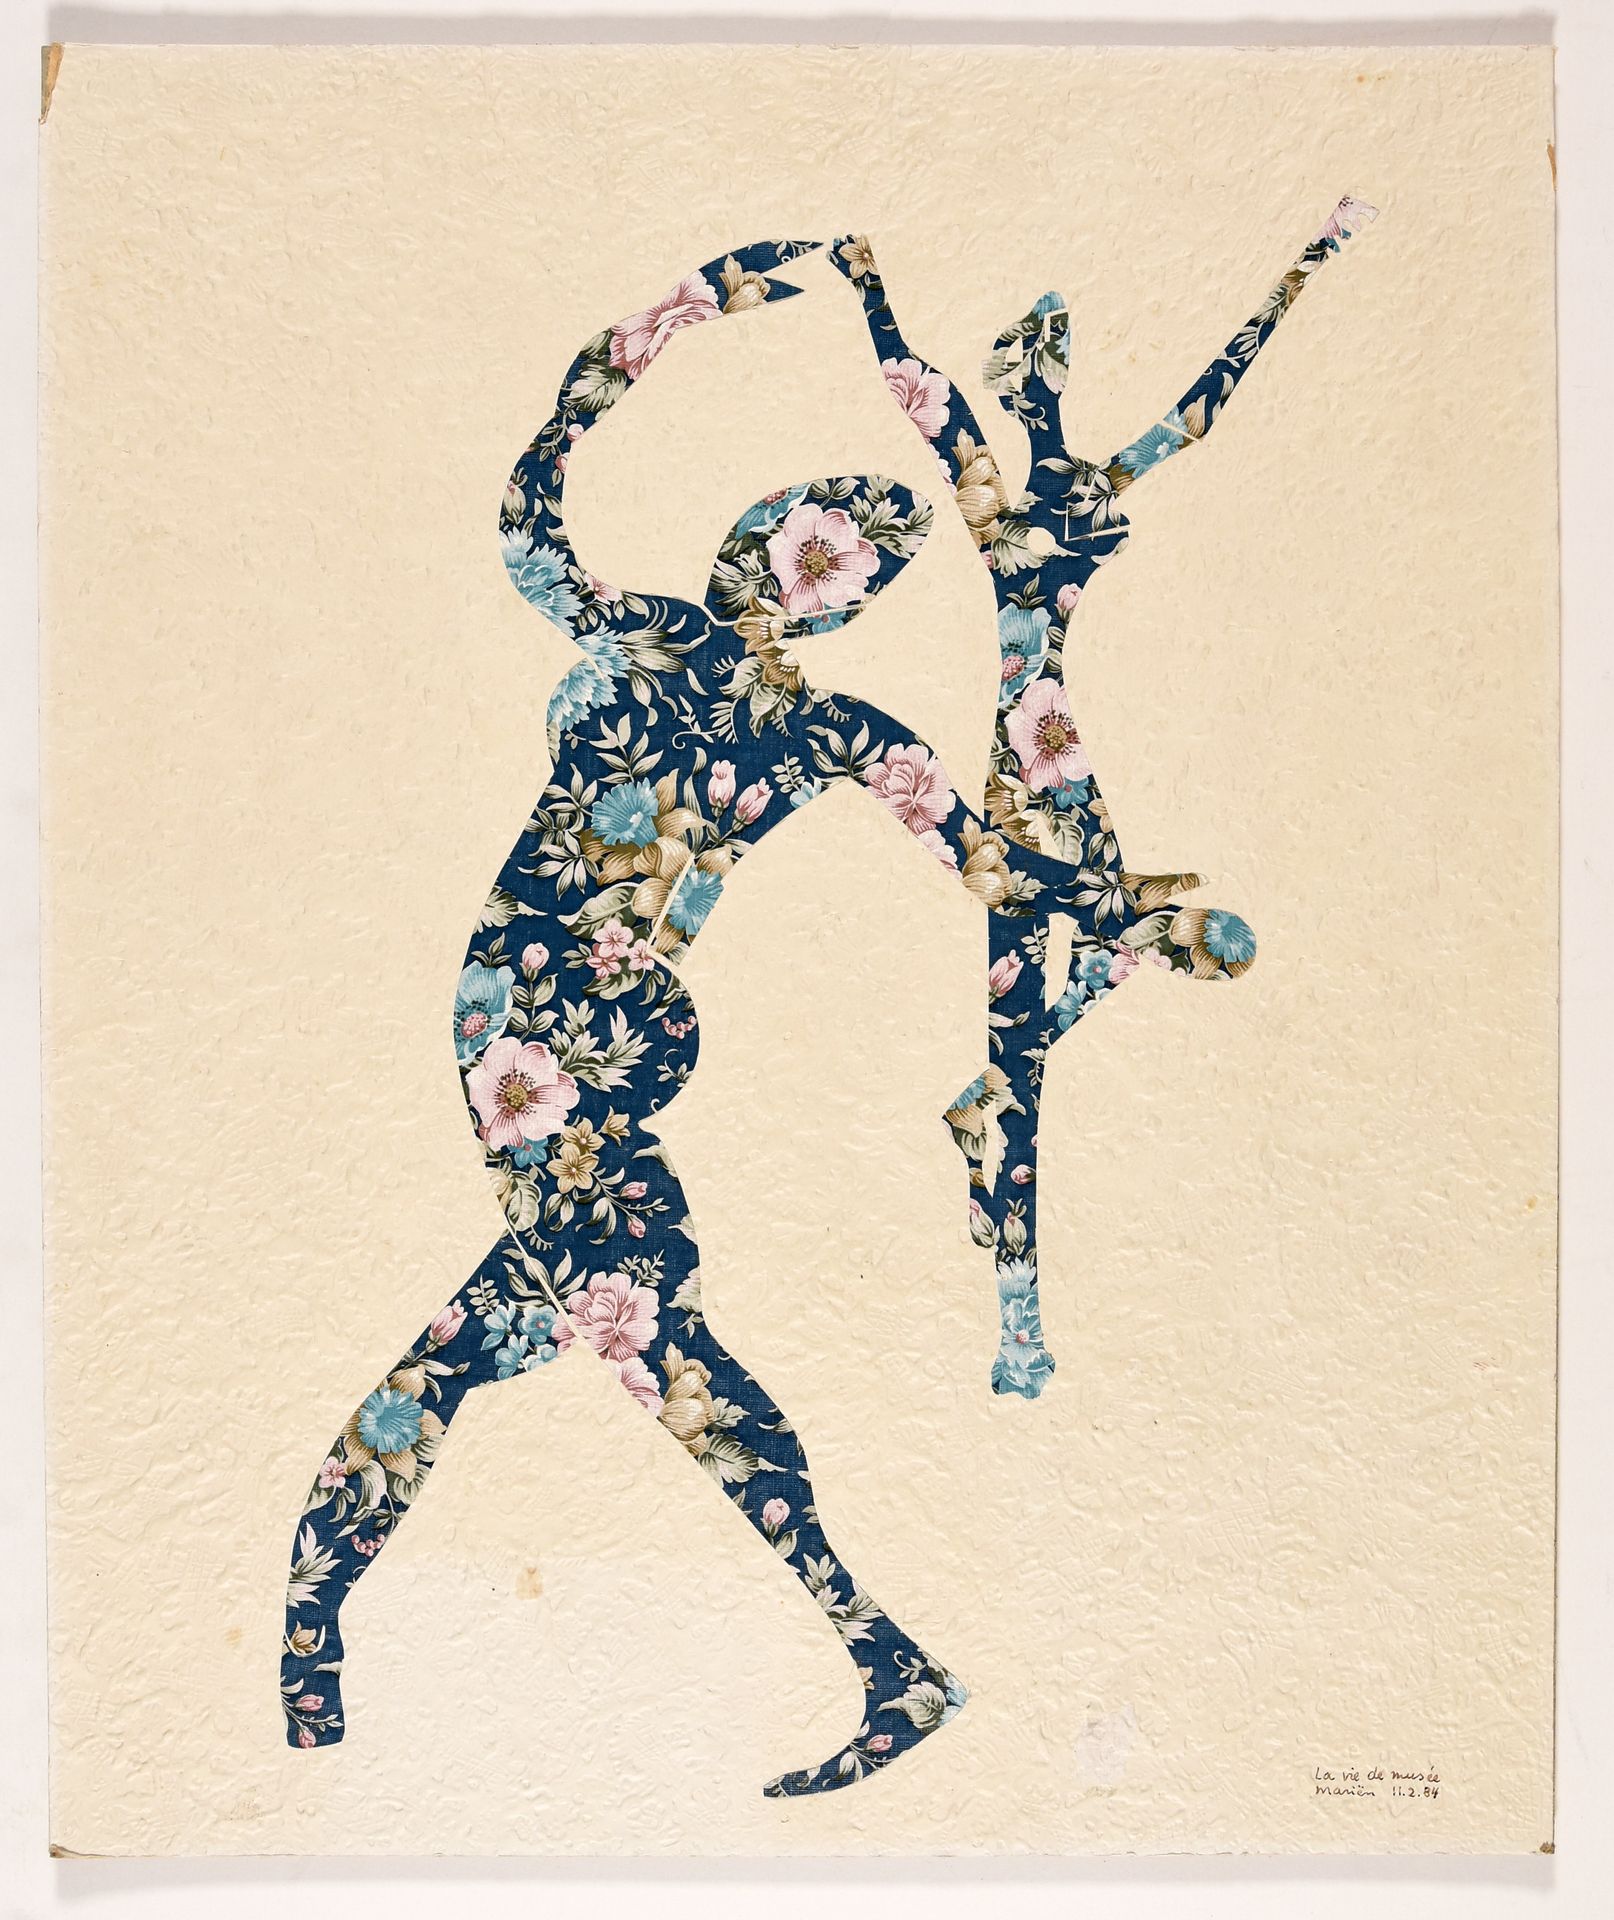 Mariën, Marcel MARIËN, Marcel La vie de musée. 1984 Collage, carta dipinta monta&hellip;